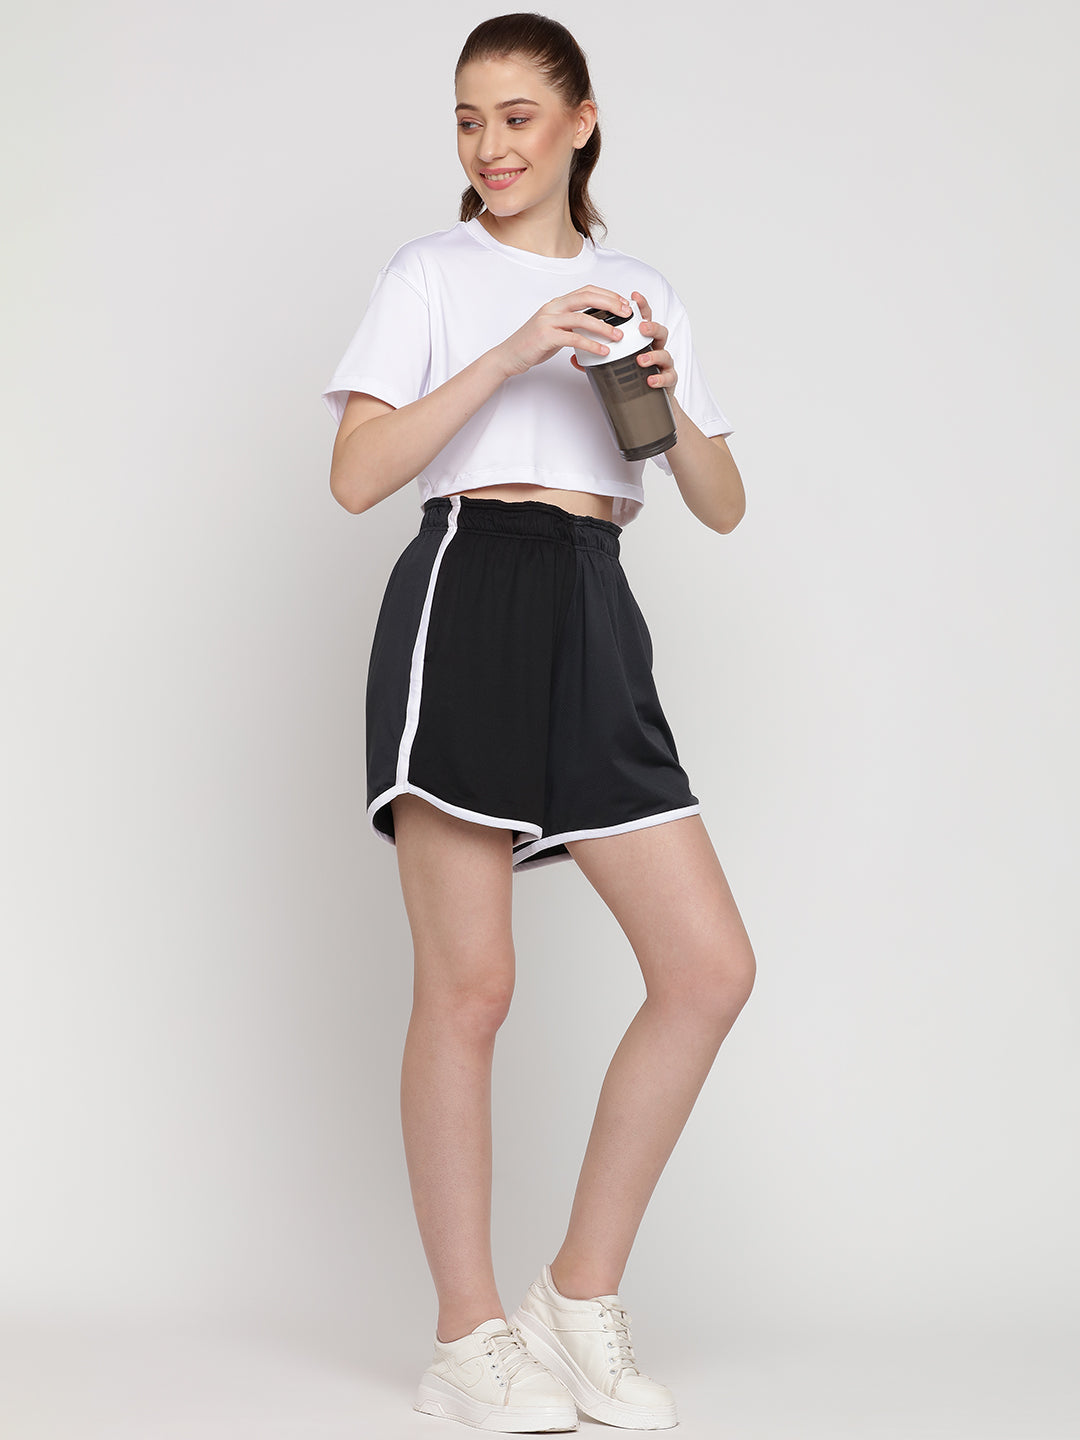 Flow Fit Shorts & Crop Top Set - White